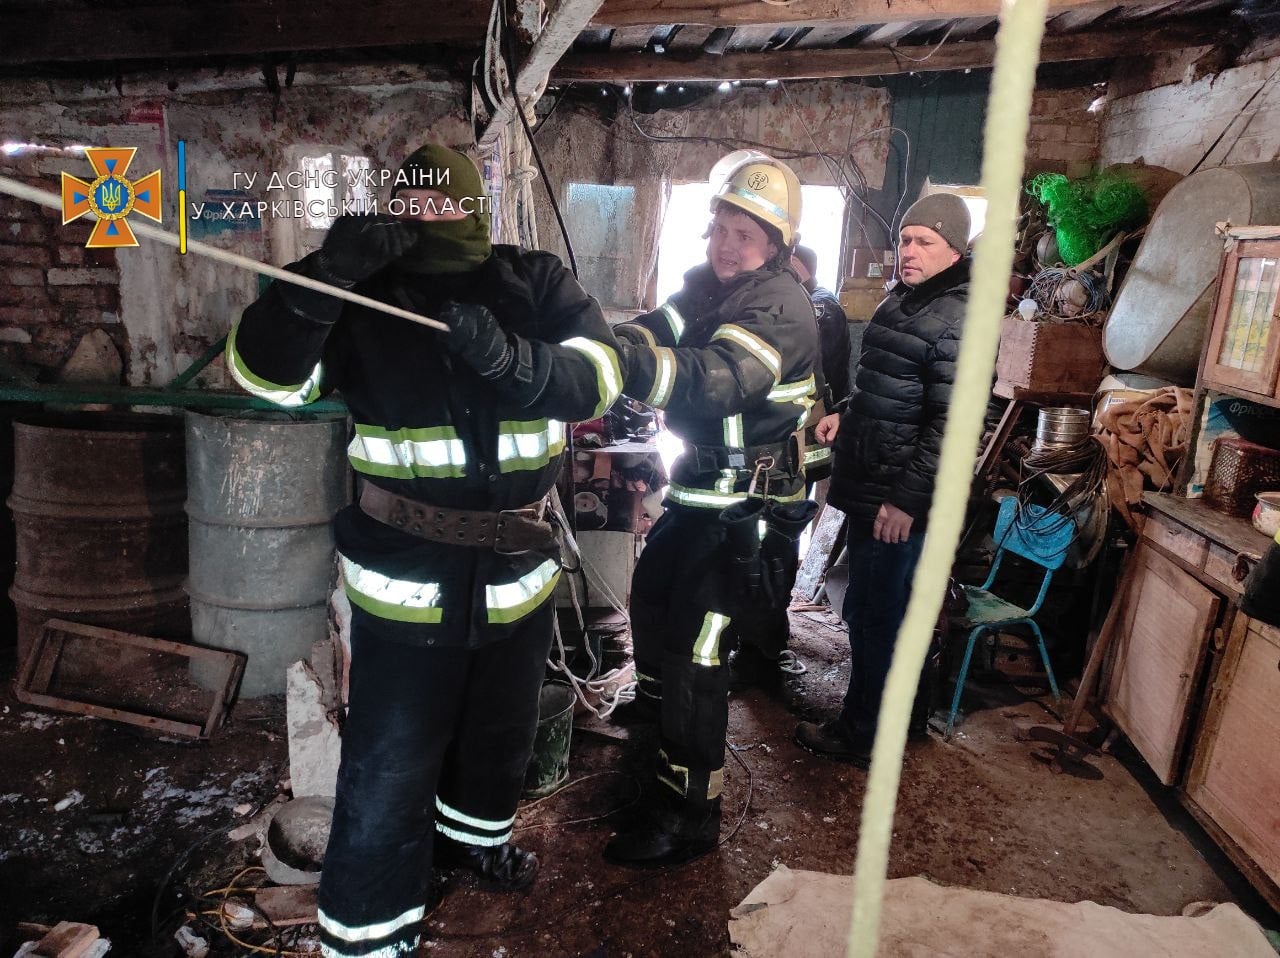 Криминал Харьков: в 12-метровый колодец упала женщина